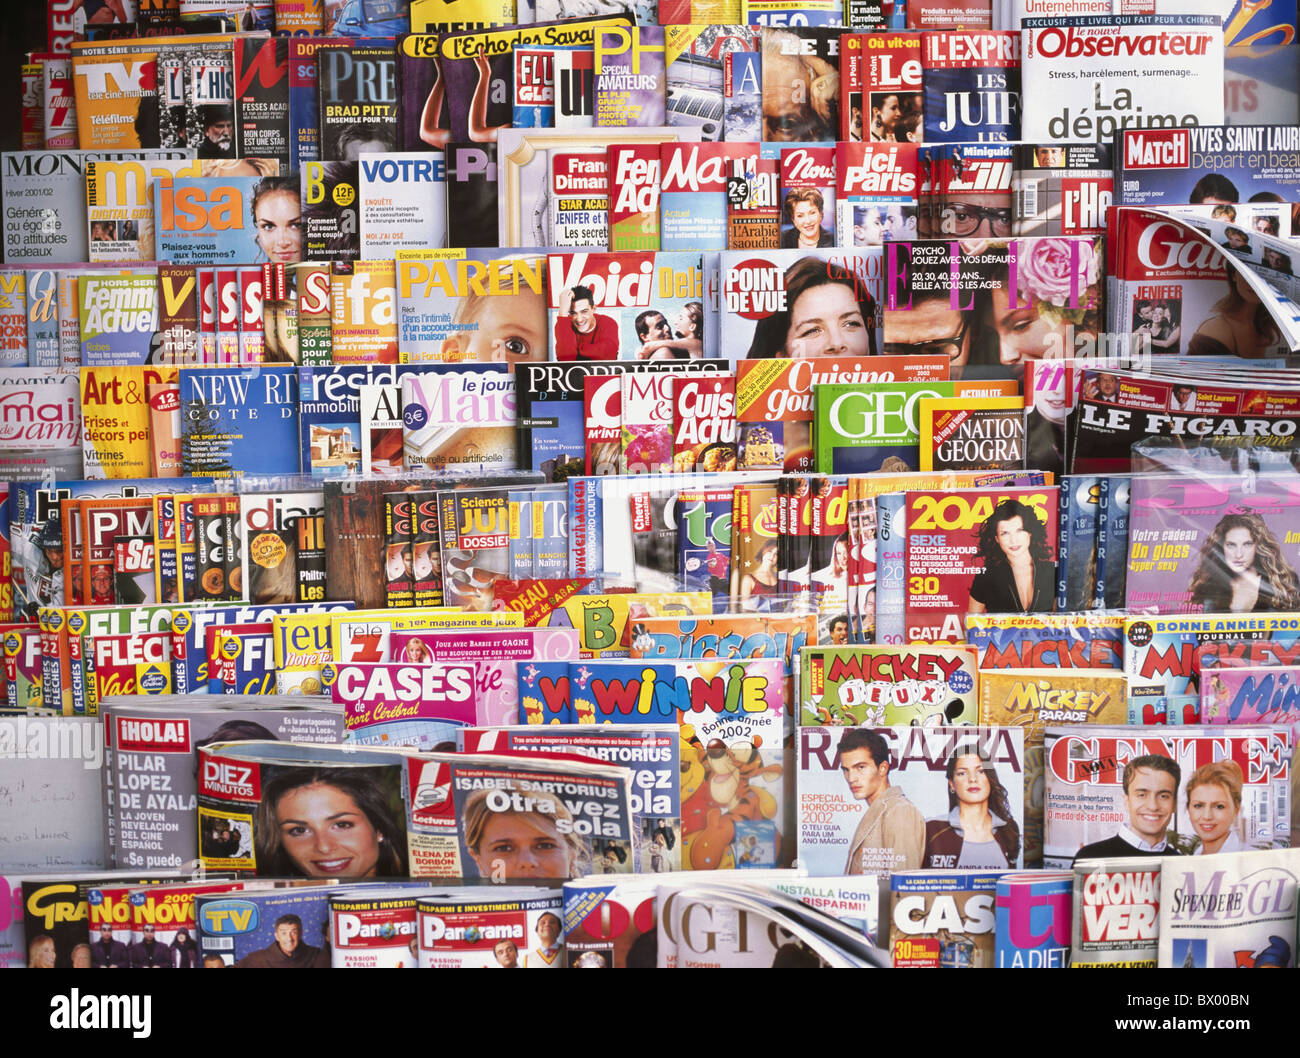 Bild-Füllung Konzept Kiosk drücken Saftpresse Schweiz Europa viele  Zeitschriftenständer Zeitung Box Magazin Stockfotografie - Alamy